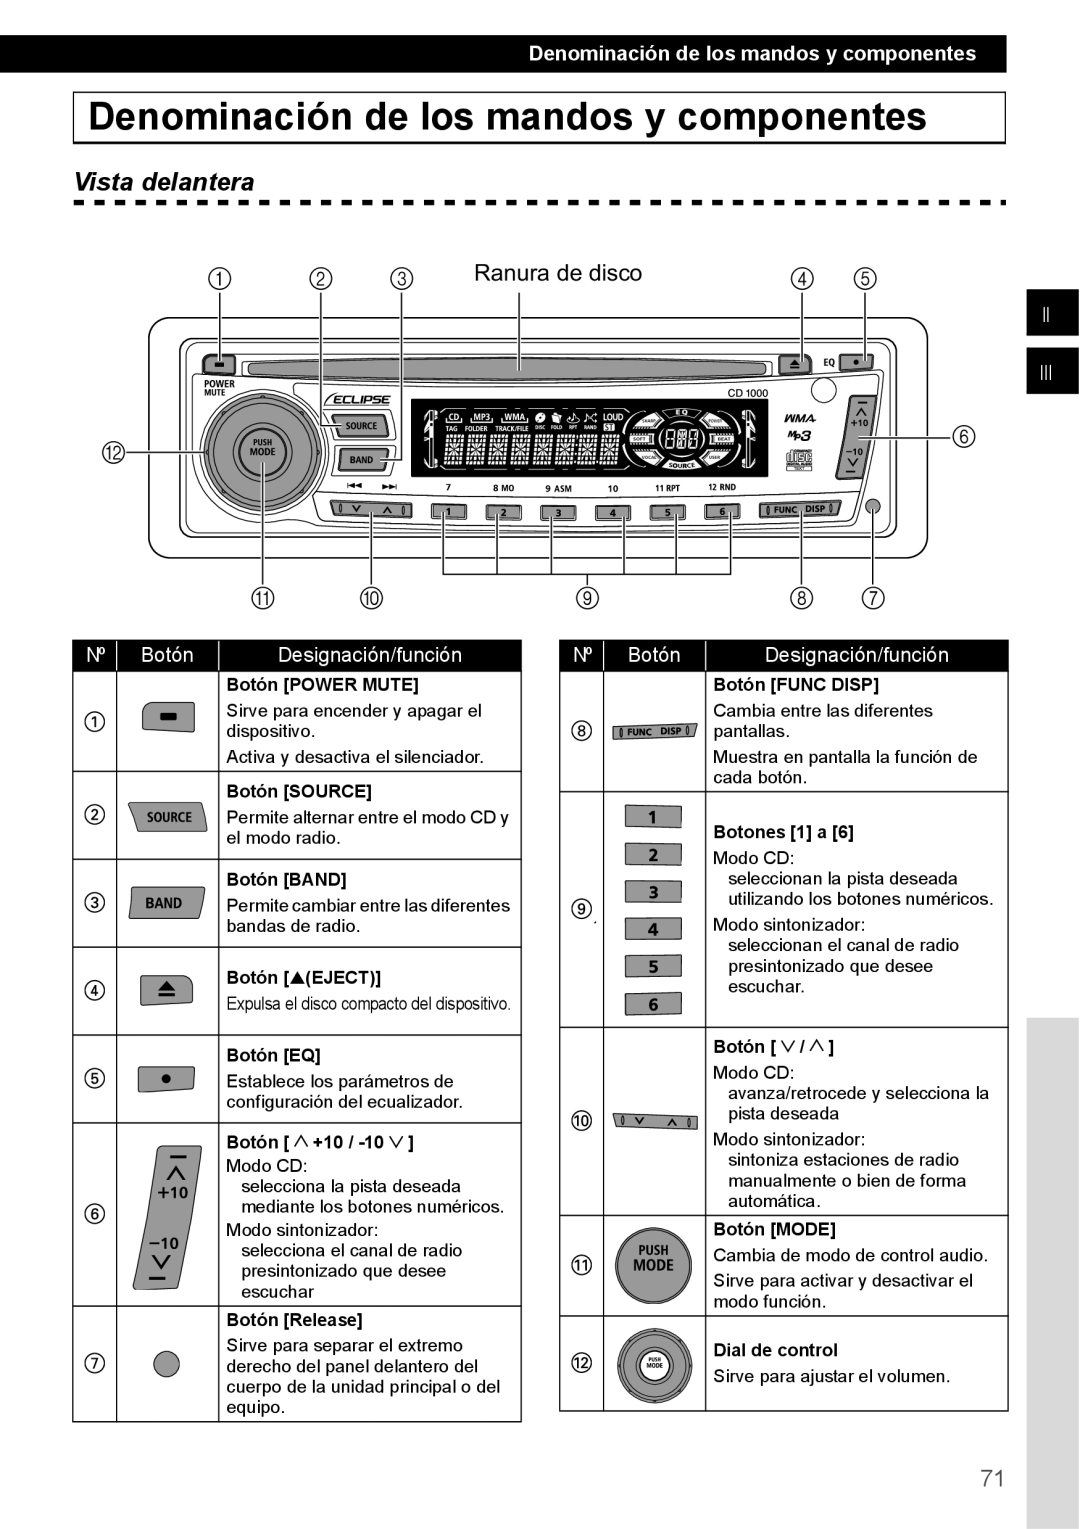 Eclipse - Fujitsu Ten CD1000 Denominación de los mandos y componentes, Vista delantera, 2 3 Ranura de disco, Ii Iii, Botón 